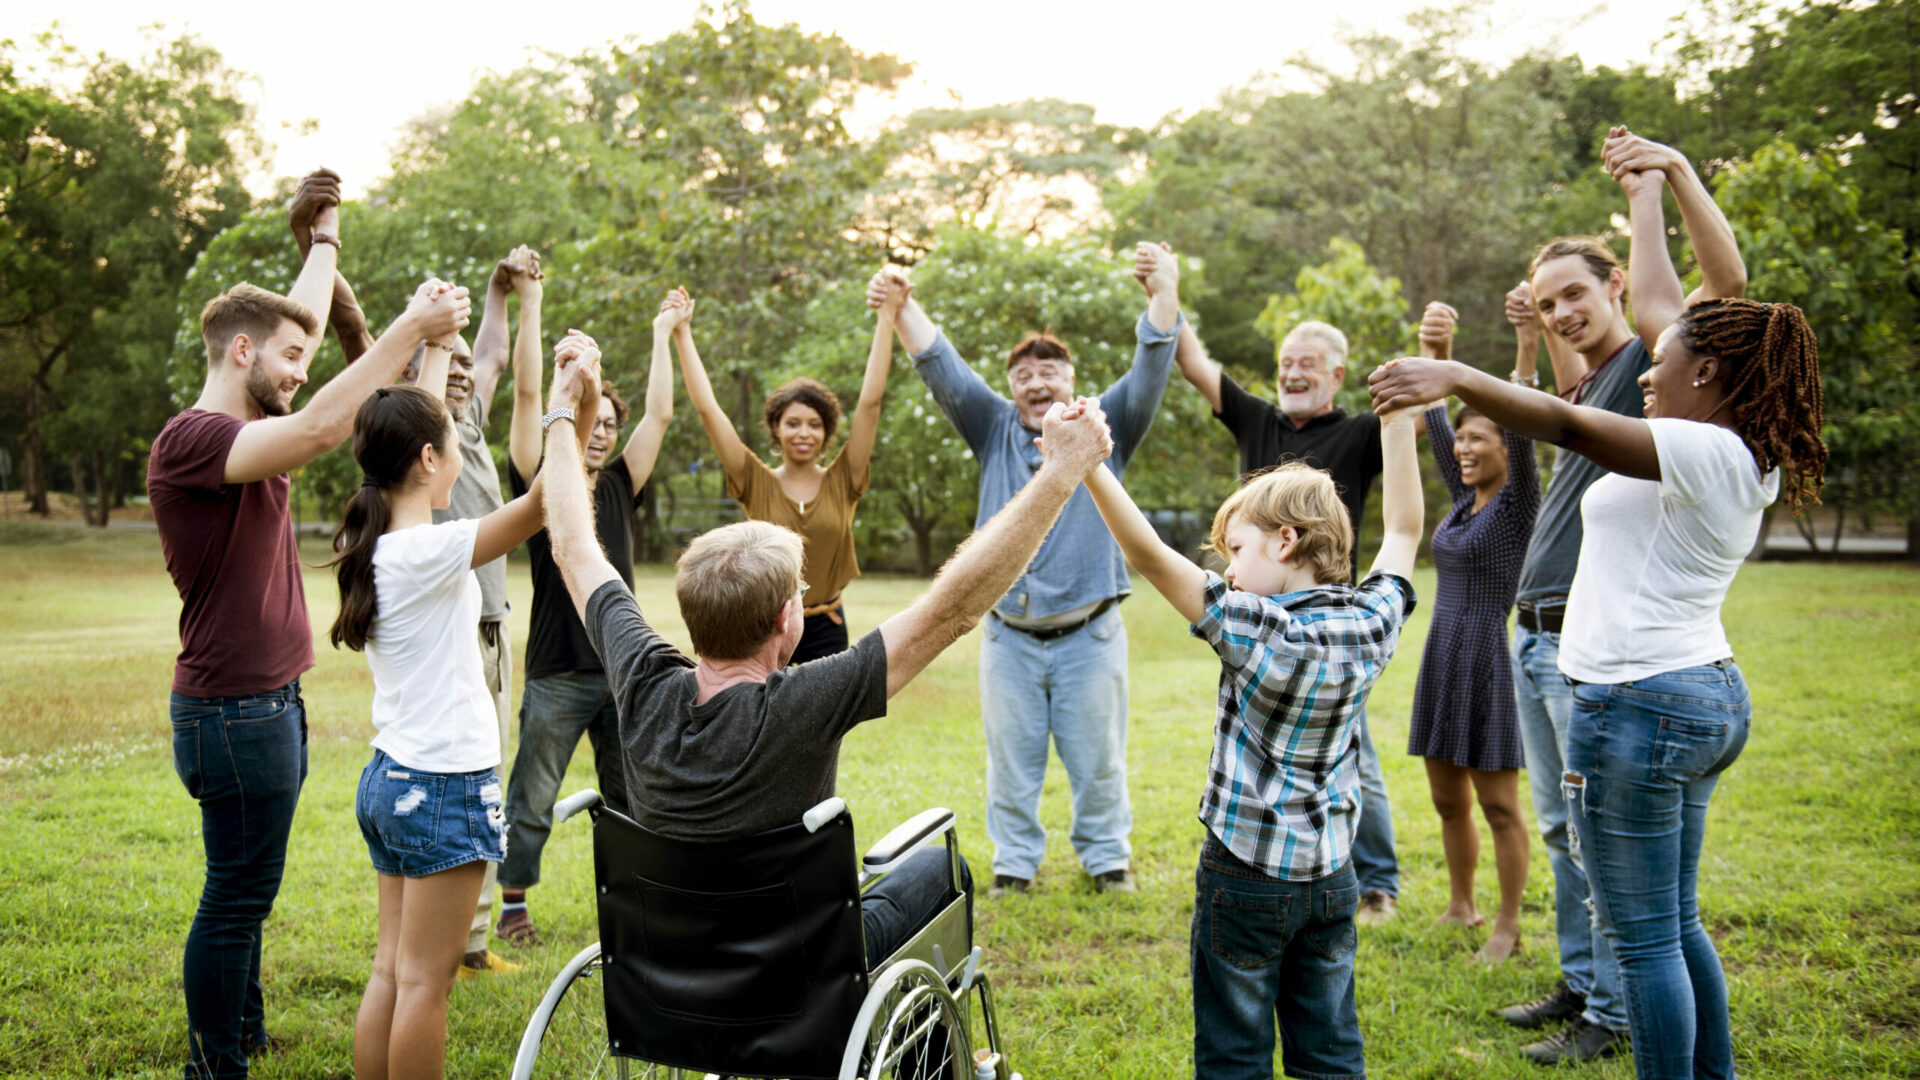 Image de plusieurs personnes en cercle de différents âges, sexe, cultures, se tenant et levant les mains